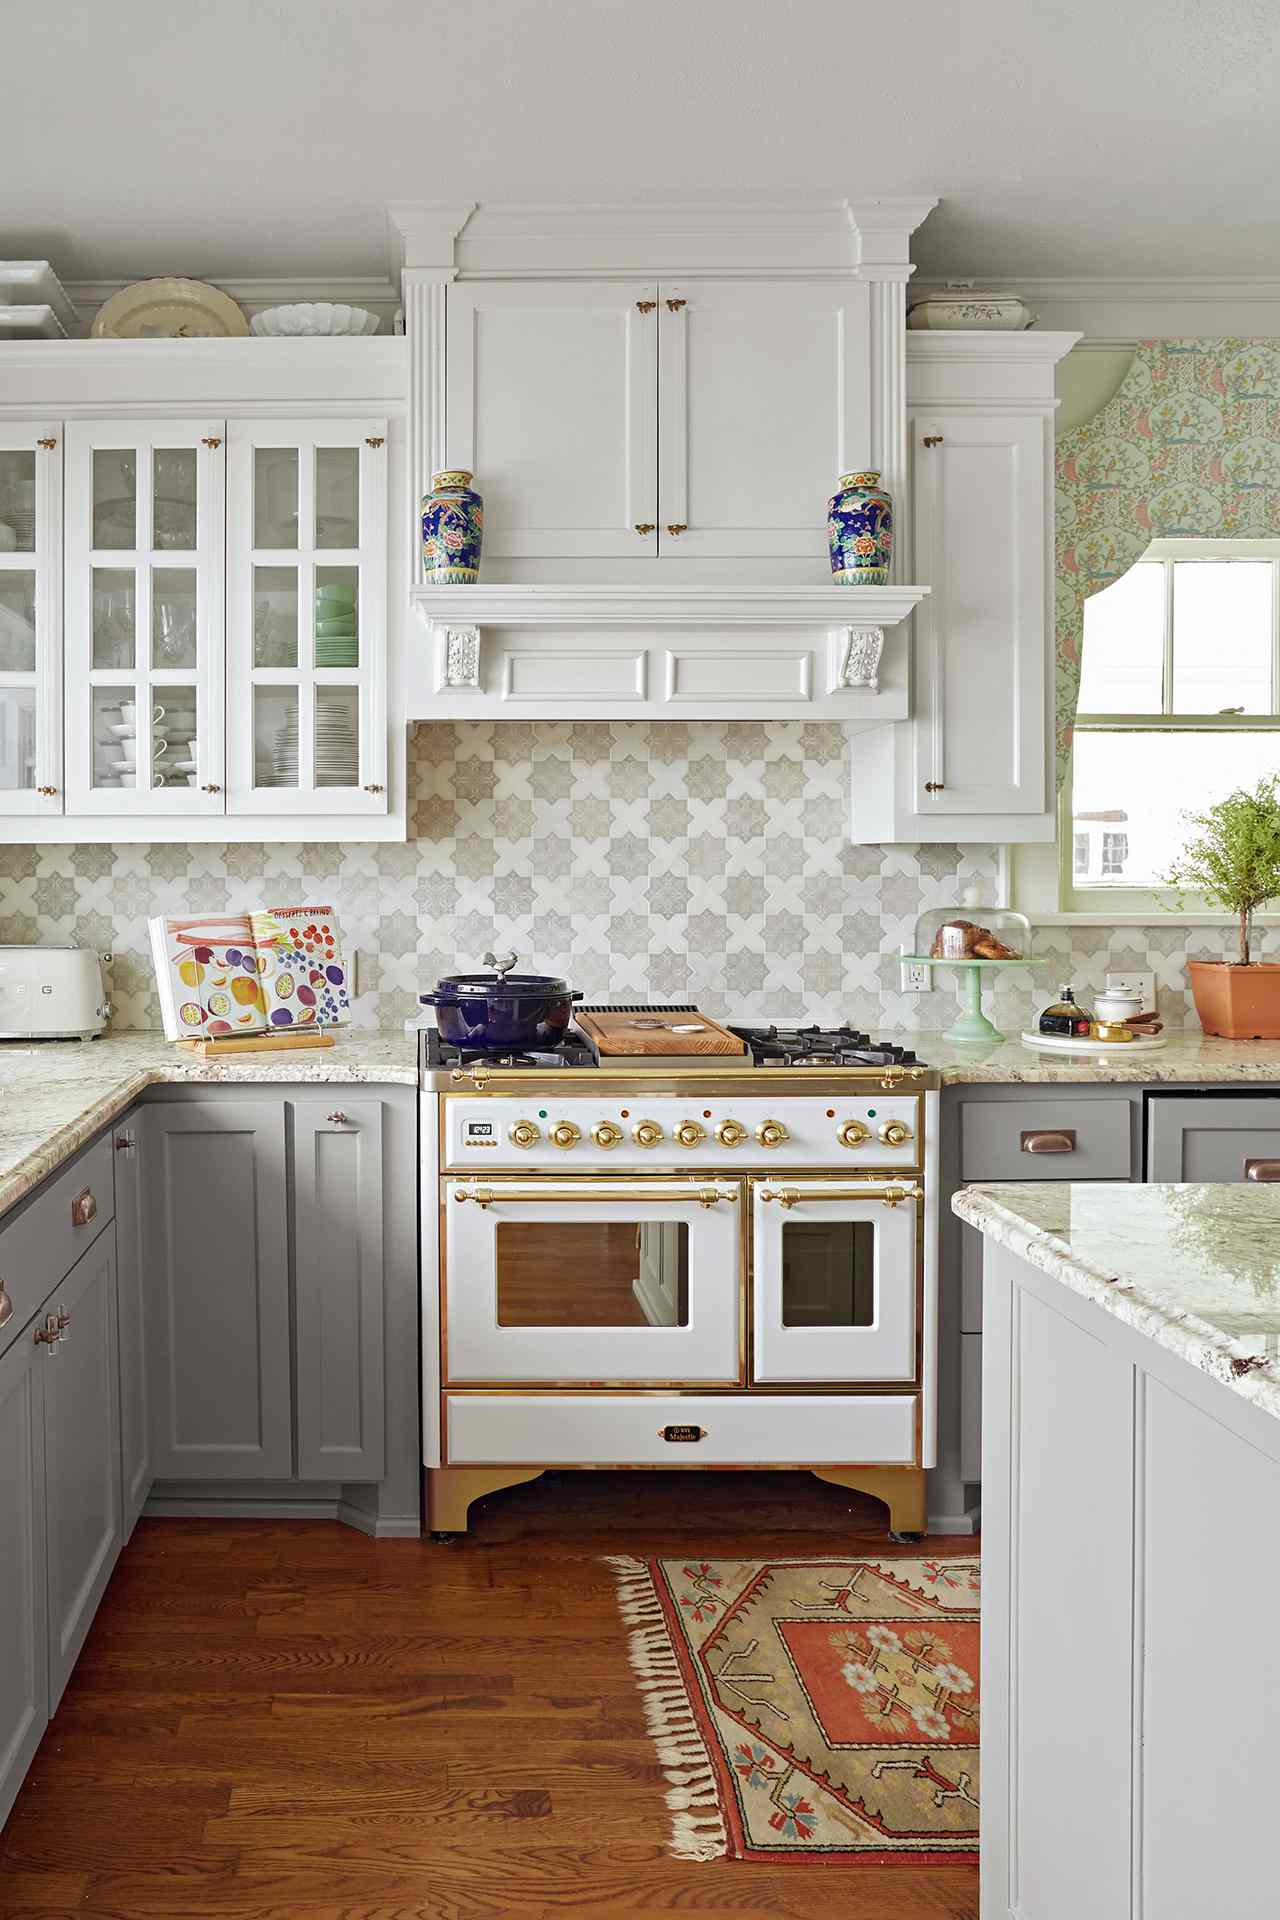 21 Tile Backsplash Ideas For Behind The, Decorative Ceramic Tiles Kitchen Backsplash